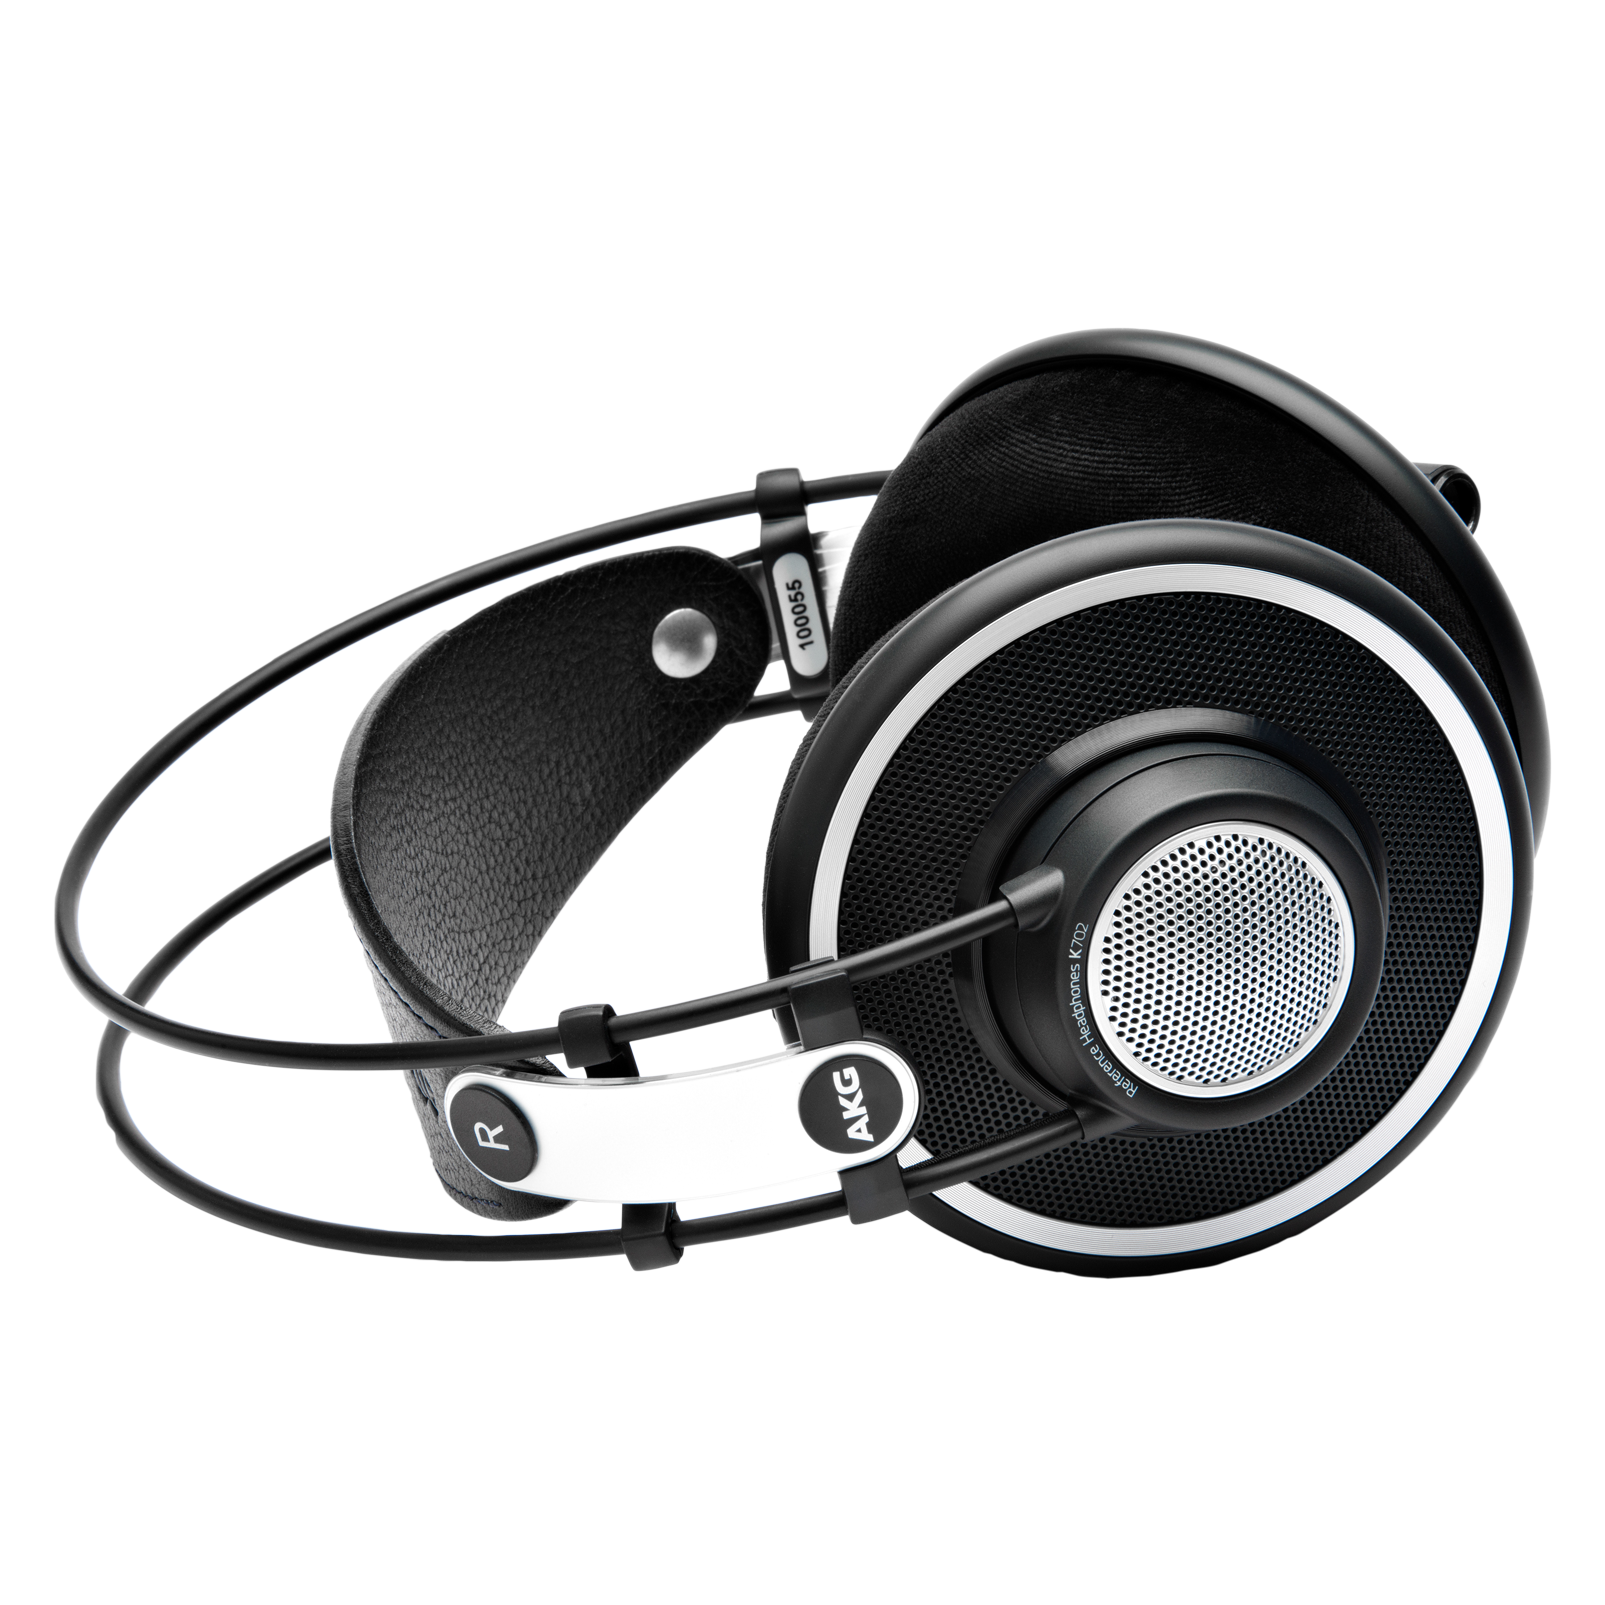 K702 (B-Stock) - Black - Reference studio headphones - Detailshot 3